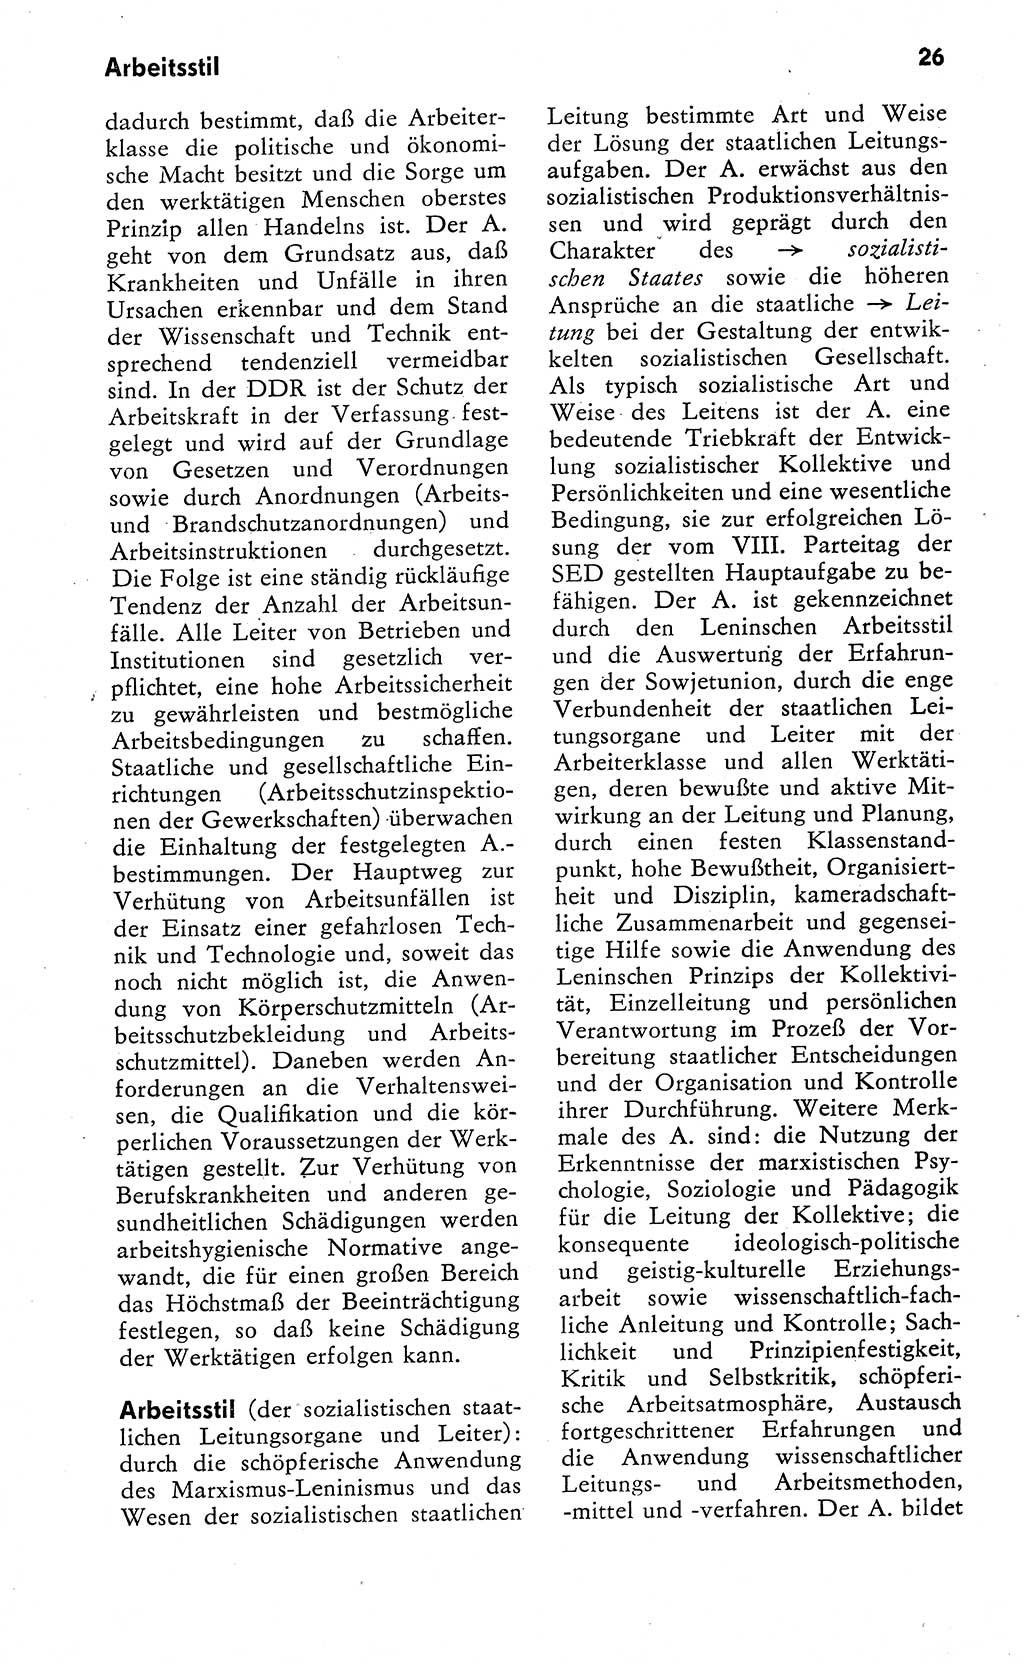 Wörterbuch zum sozialistischen Staat [Deutsche Demokratische Republik (DDR)] 1974, Seite 26 (Wb. soz. St. DDR 1974, S. 26)